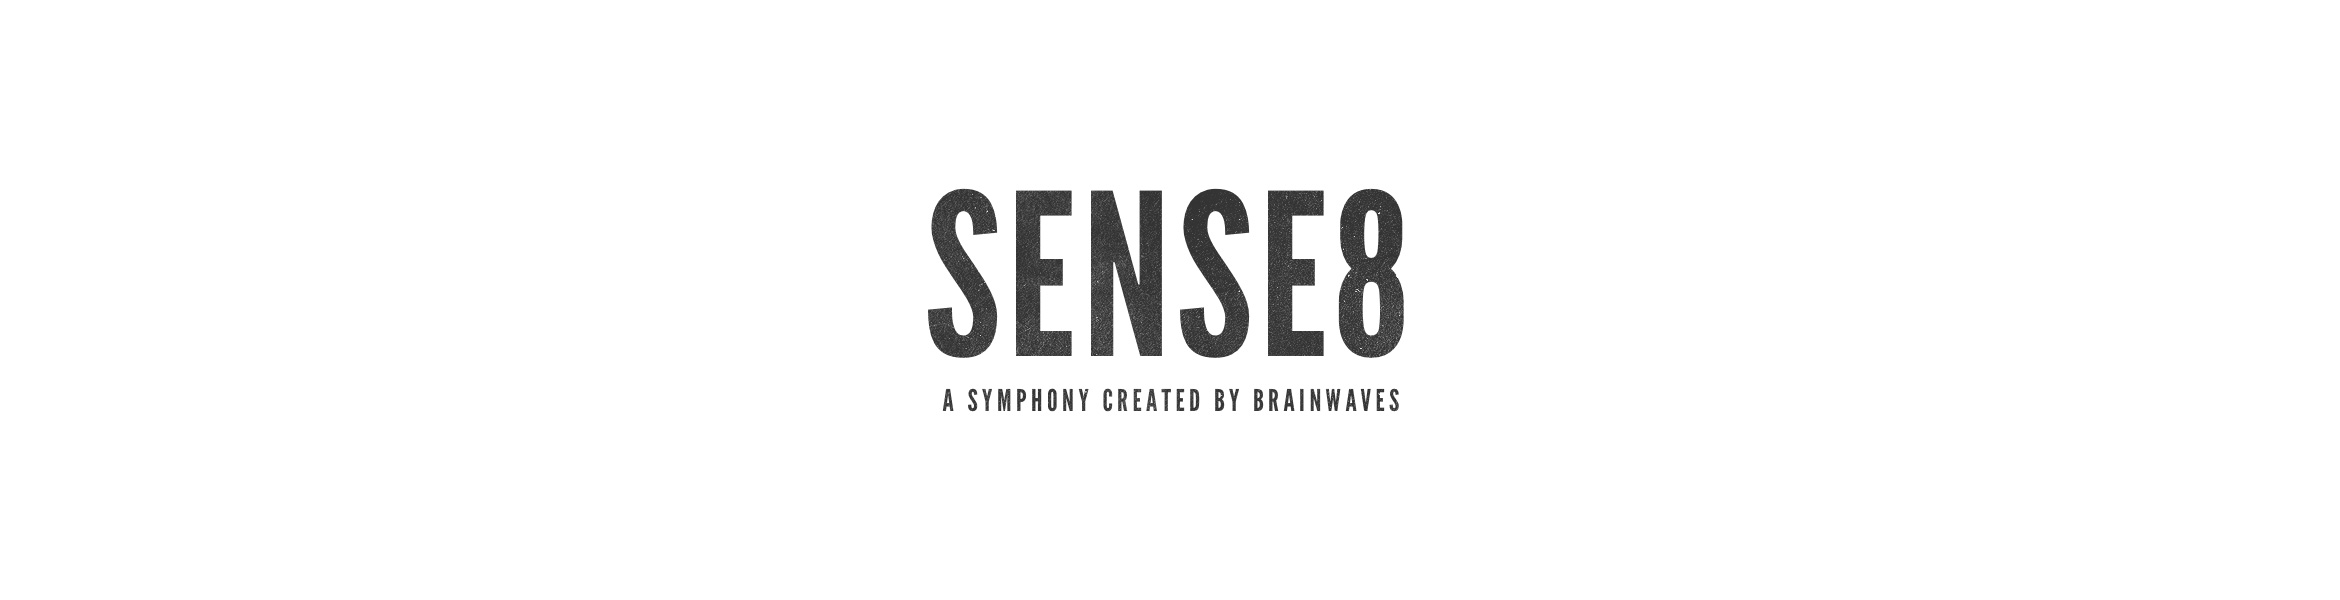 Sense8-BT